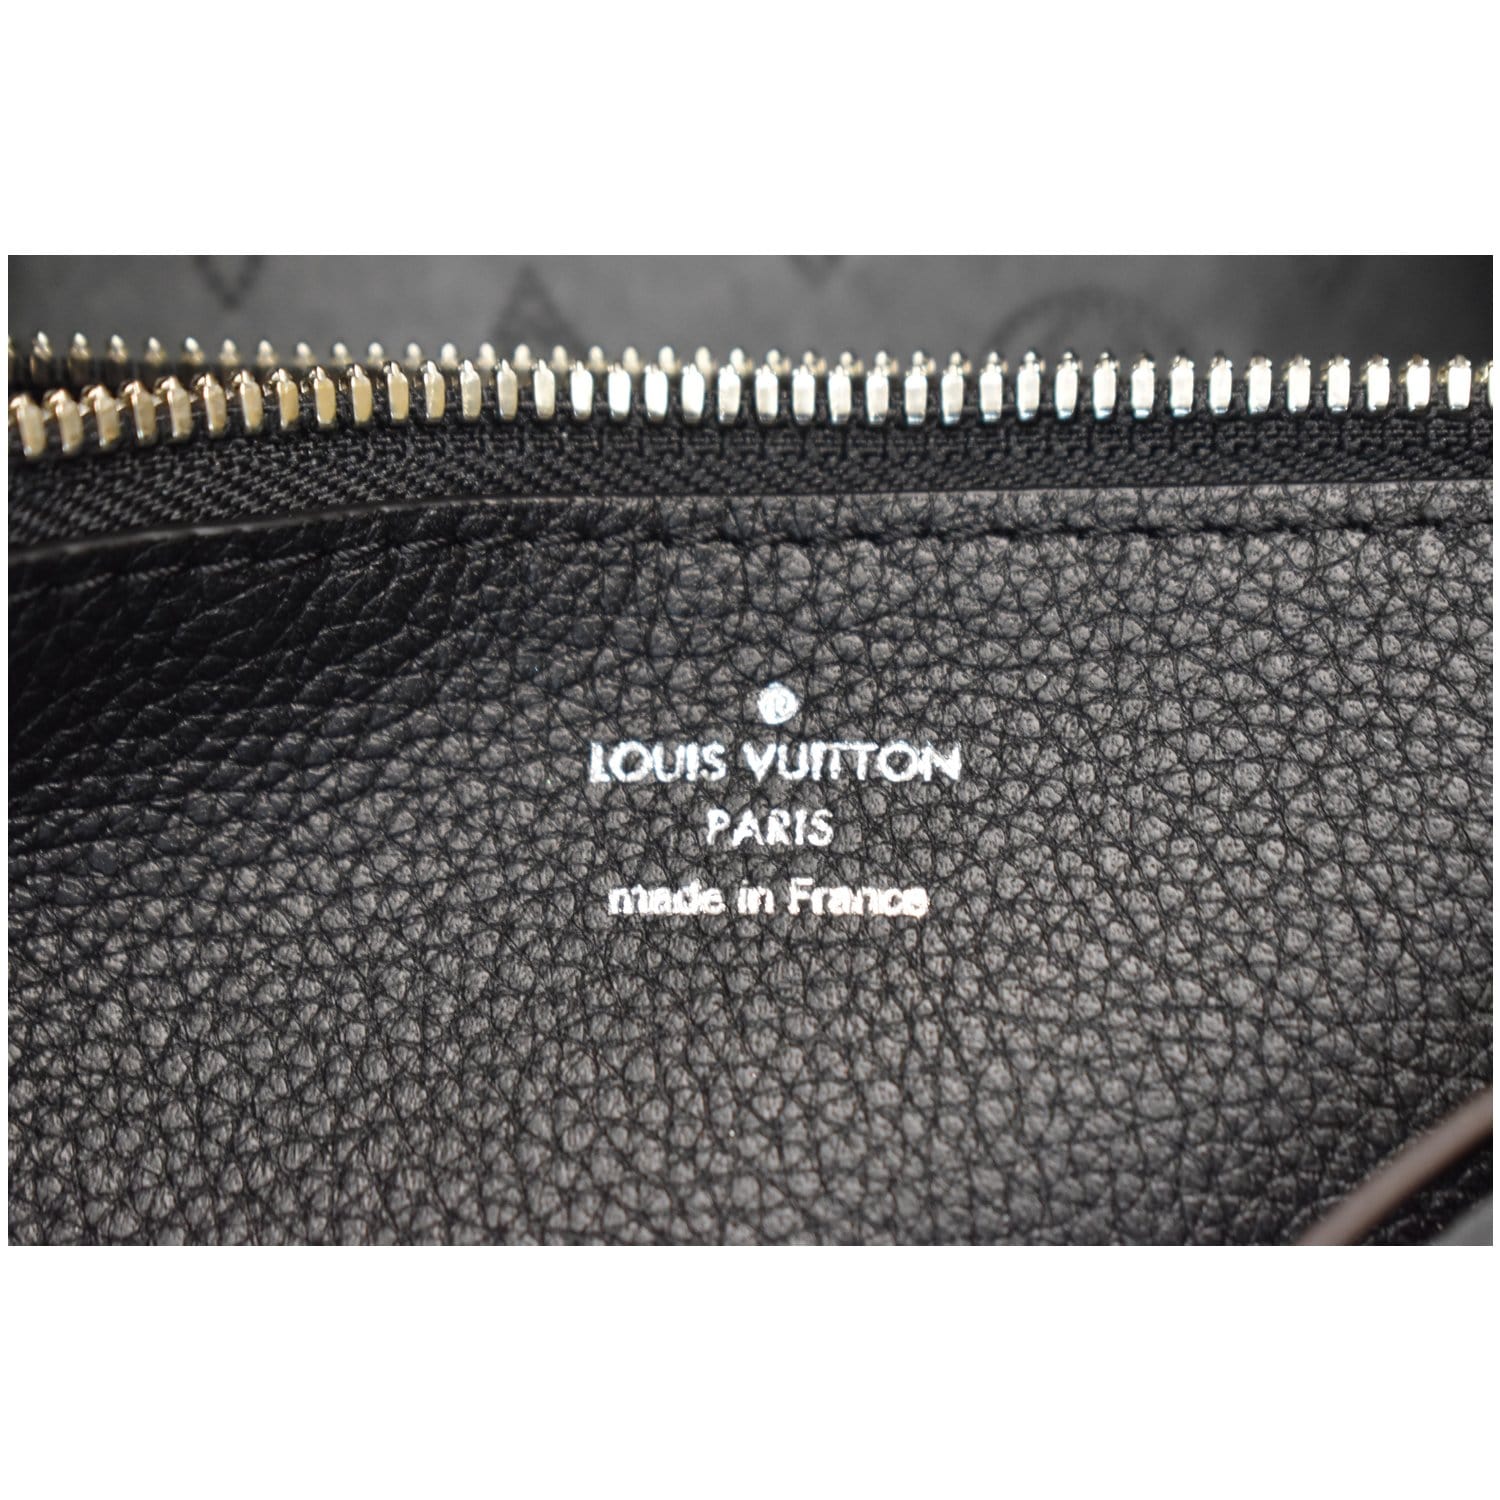 Louis Vuitton Sac Plat Fusion Fire Led Elvlm19 Black Leather Satchel, Louis  Vuitton